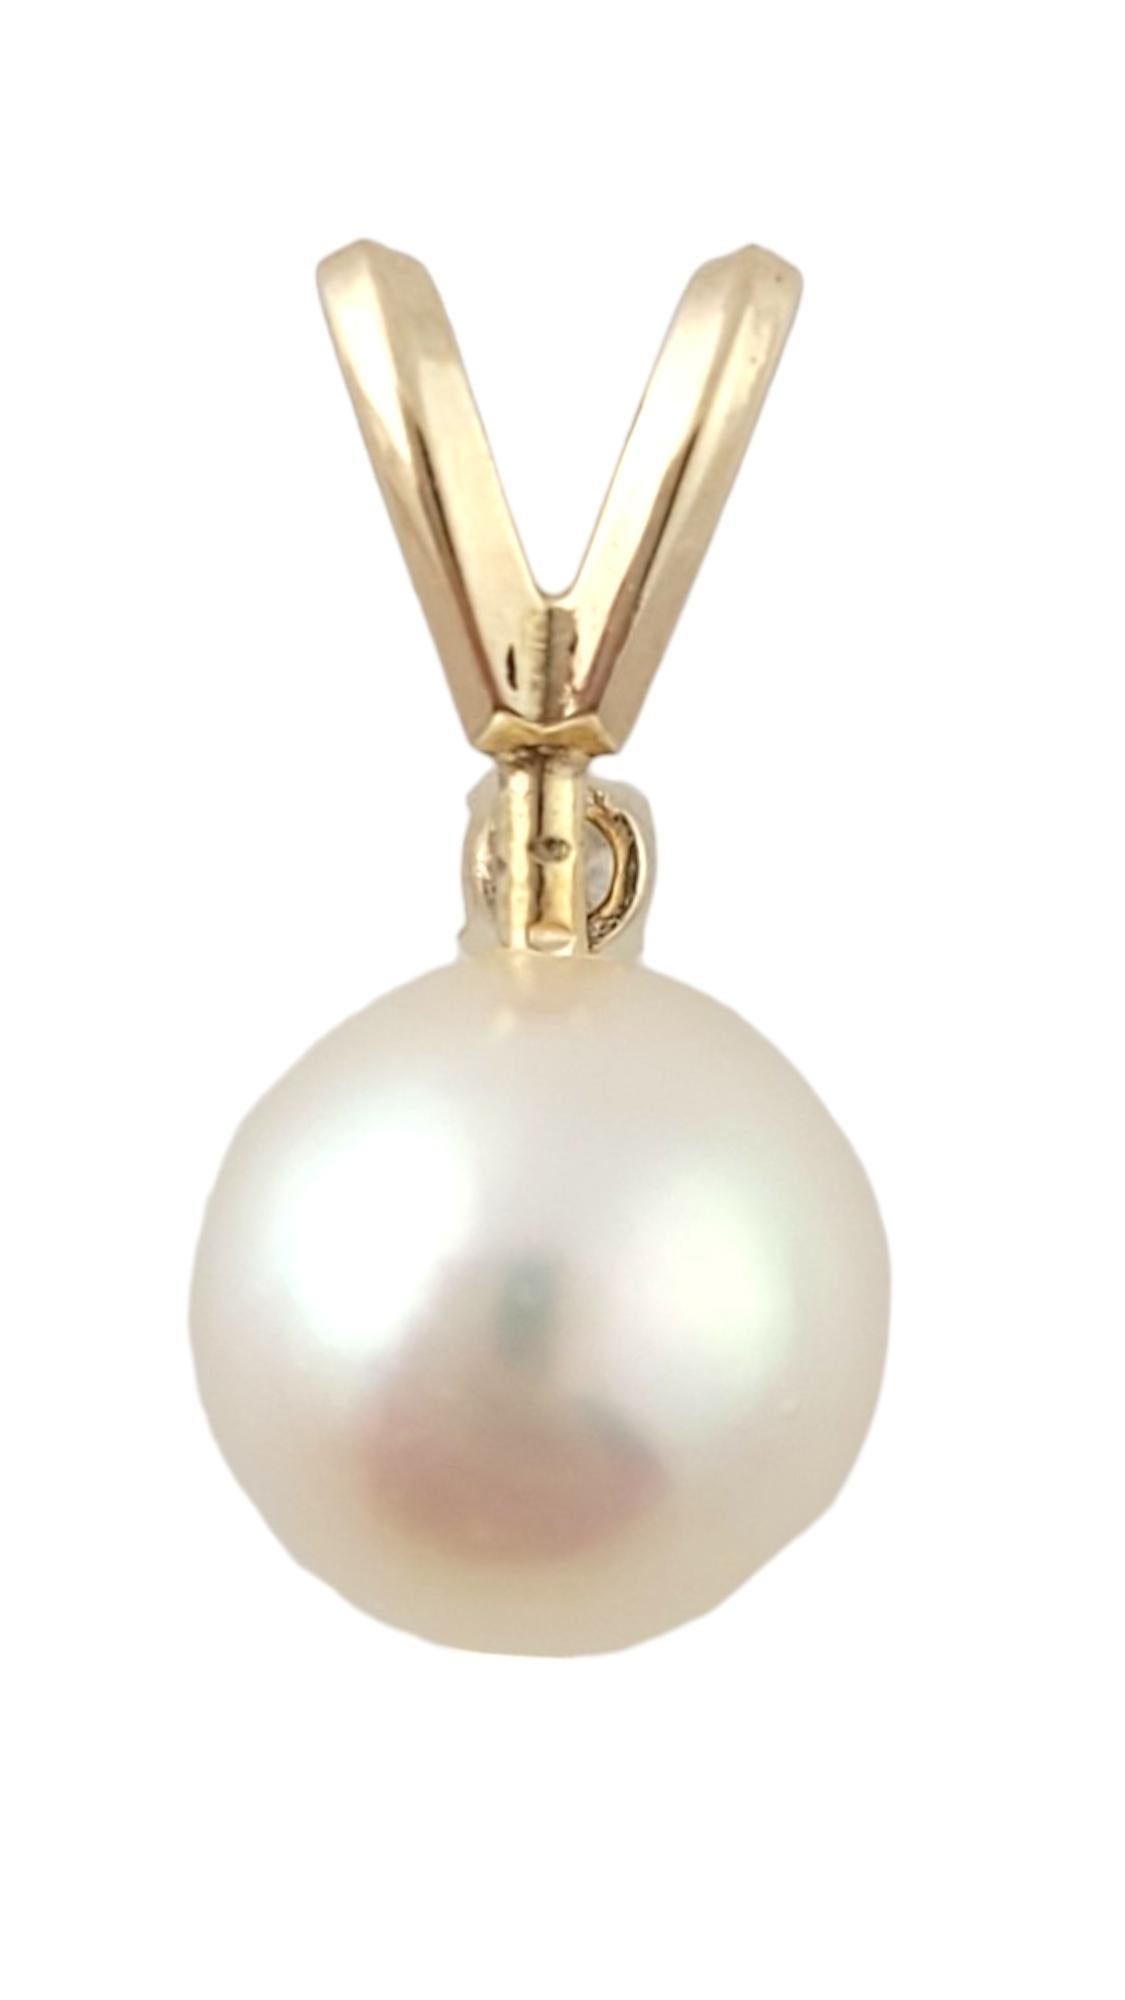 Brilliant Cut 14K Yellow Gold Pearl & Diamond Pendant #16415 For Sale